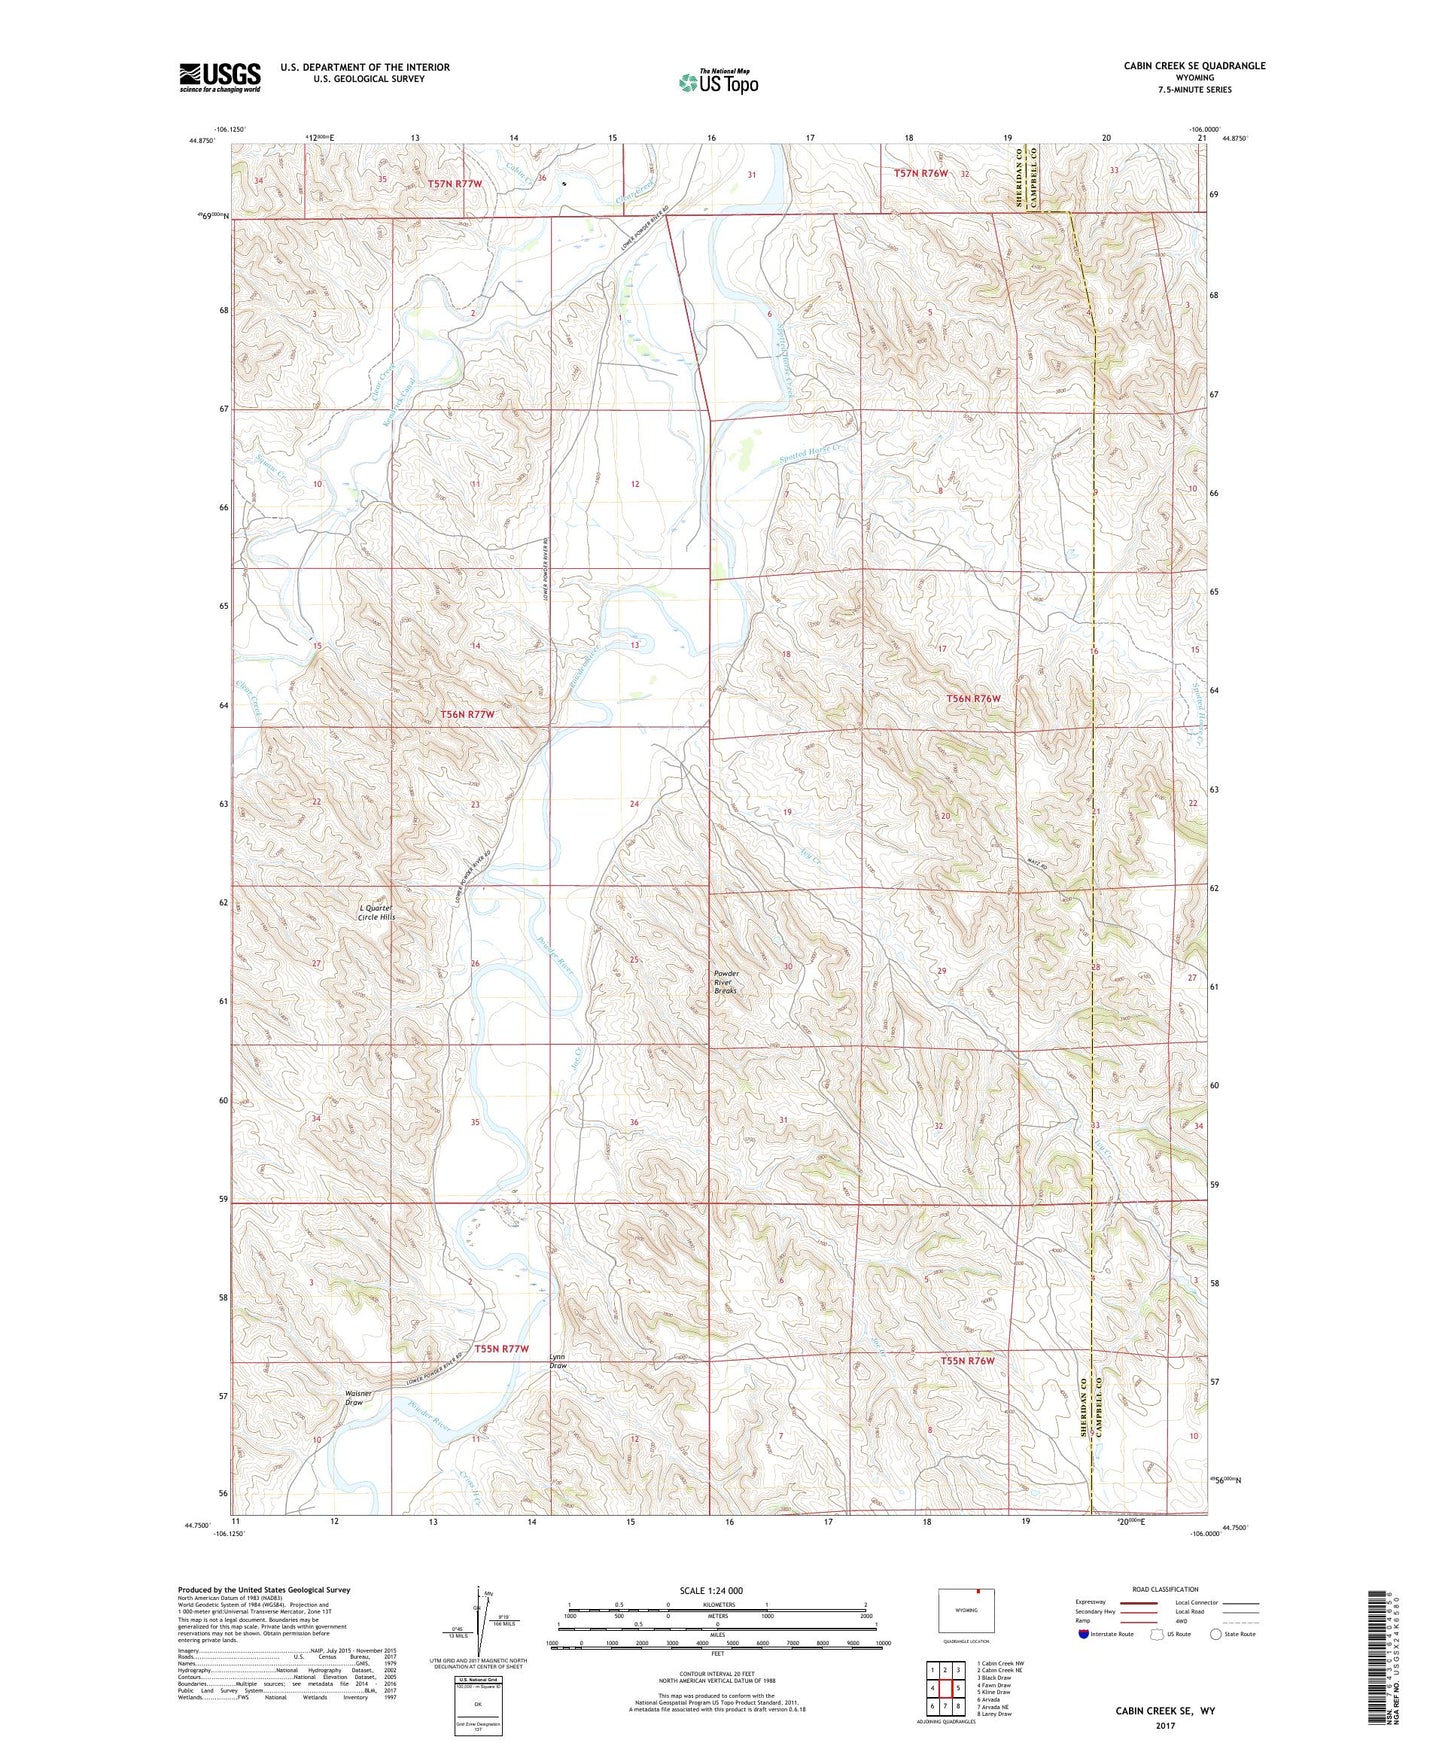 Cabin Creek SE Wyoming US Topo Map Image